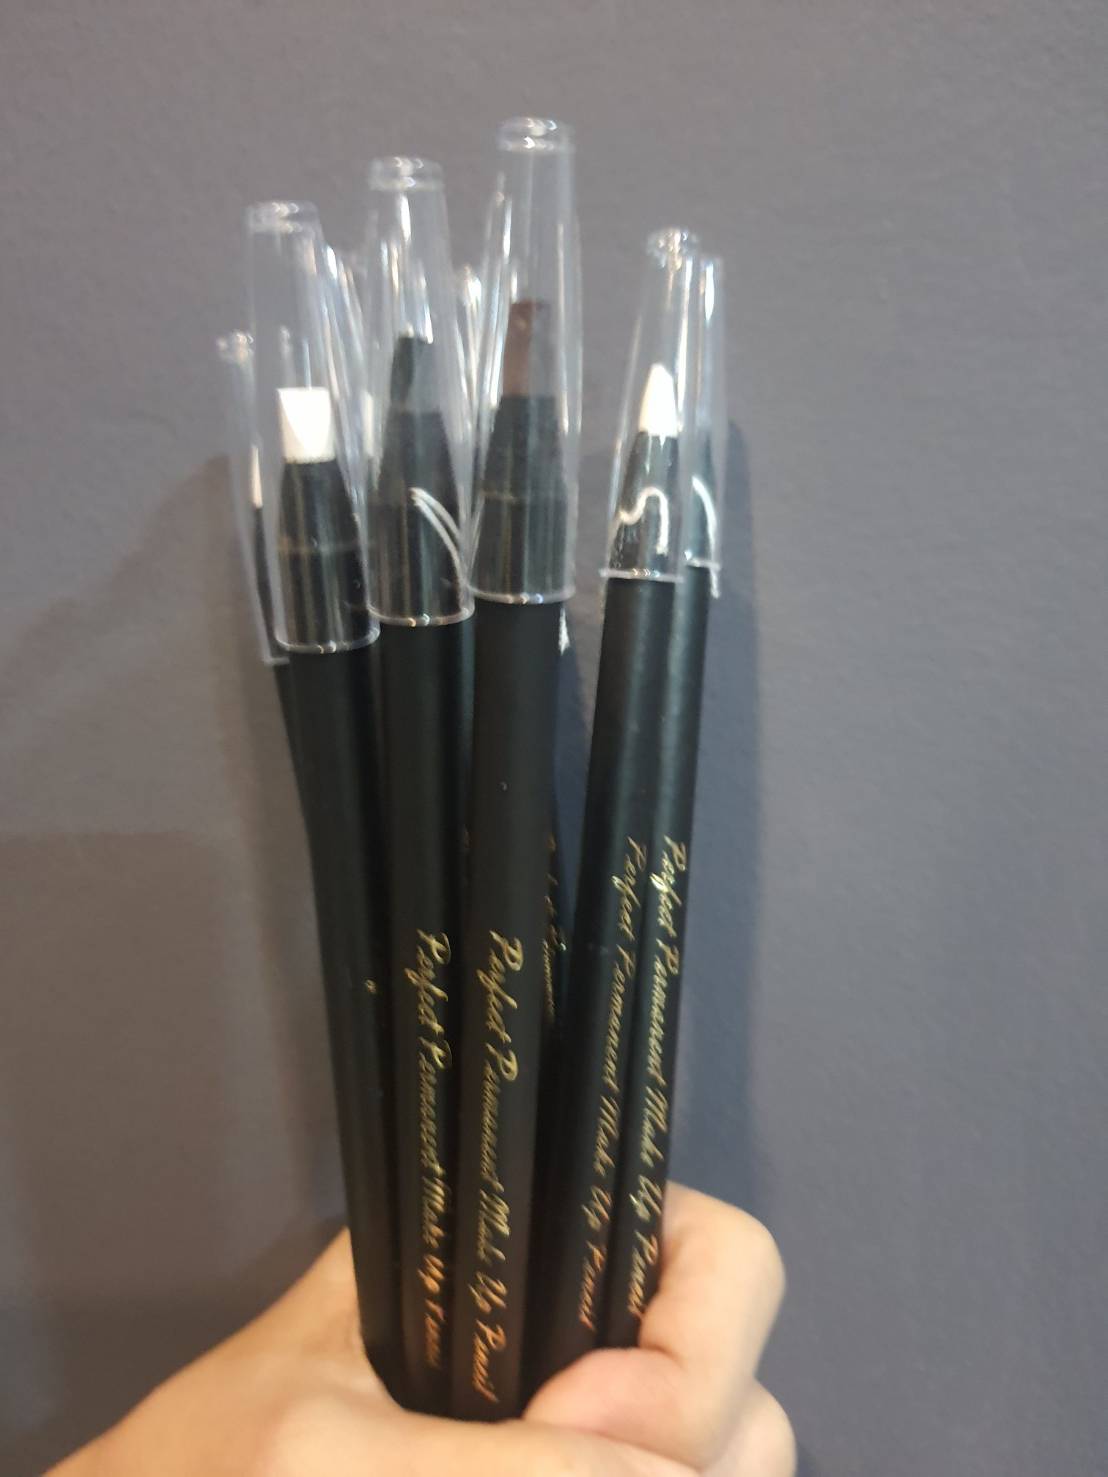 เกี่ยวกับ Gm premium shop ดินสอเขียนคิ้ว และ ขอบปากก่อนสักปาก ดินสอสำหรับเขียนคิ้ว ขอบปาก